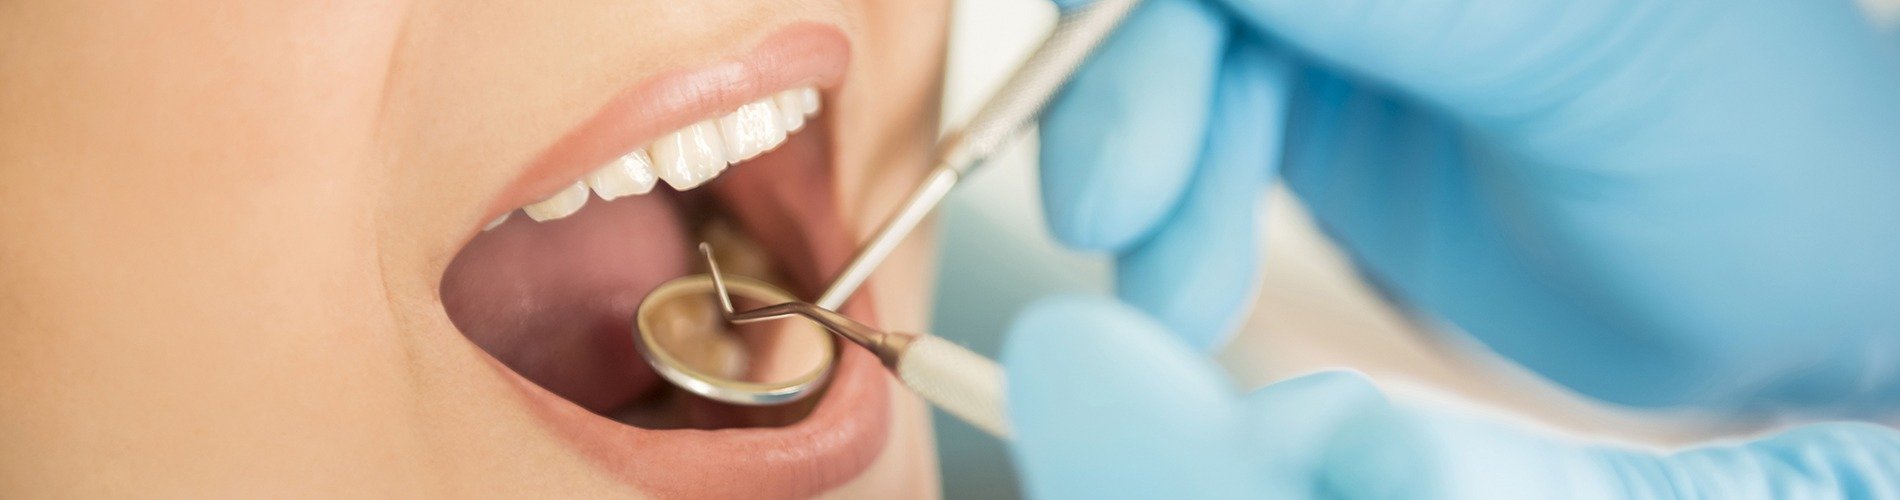 Cómo podemos cuidar el esmalte dental